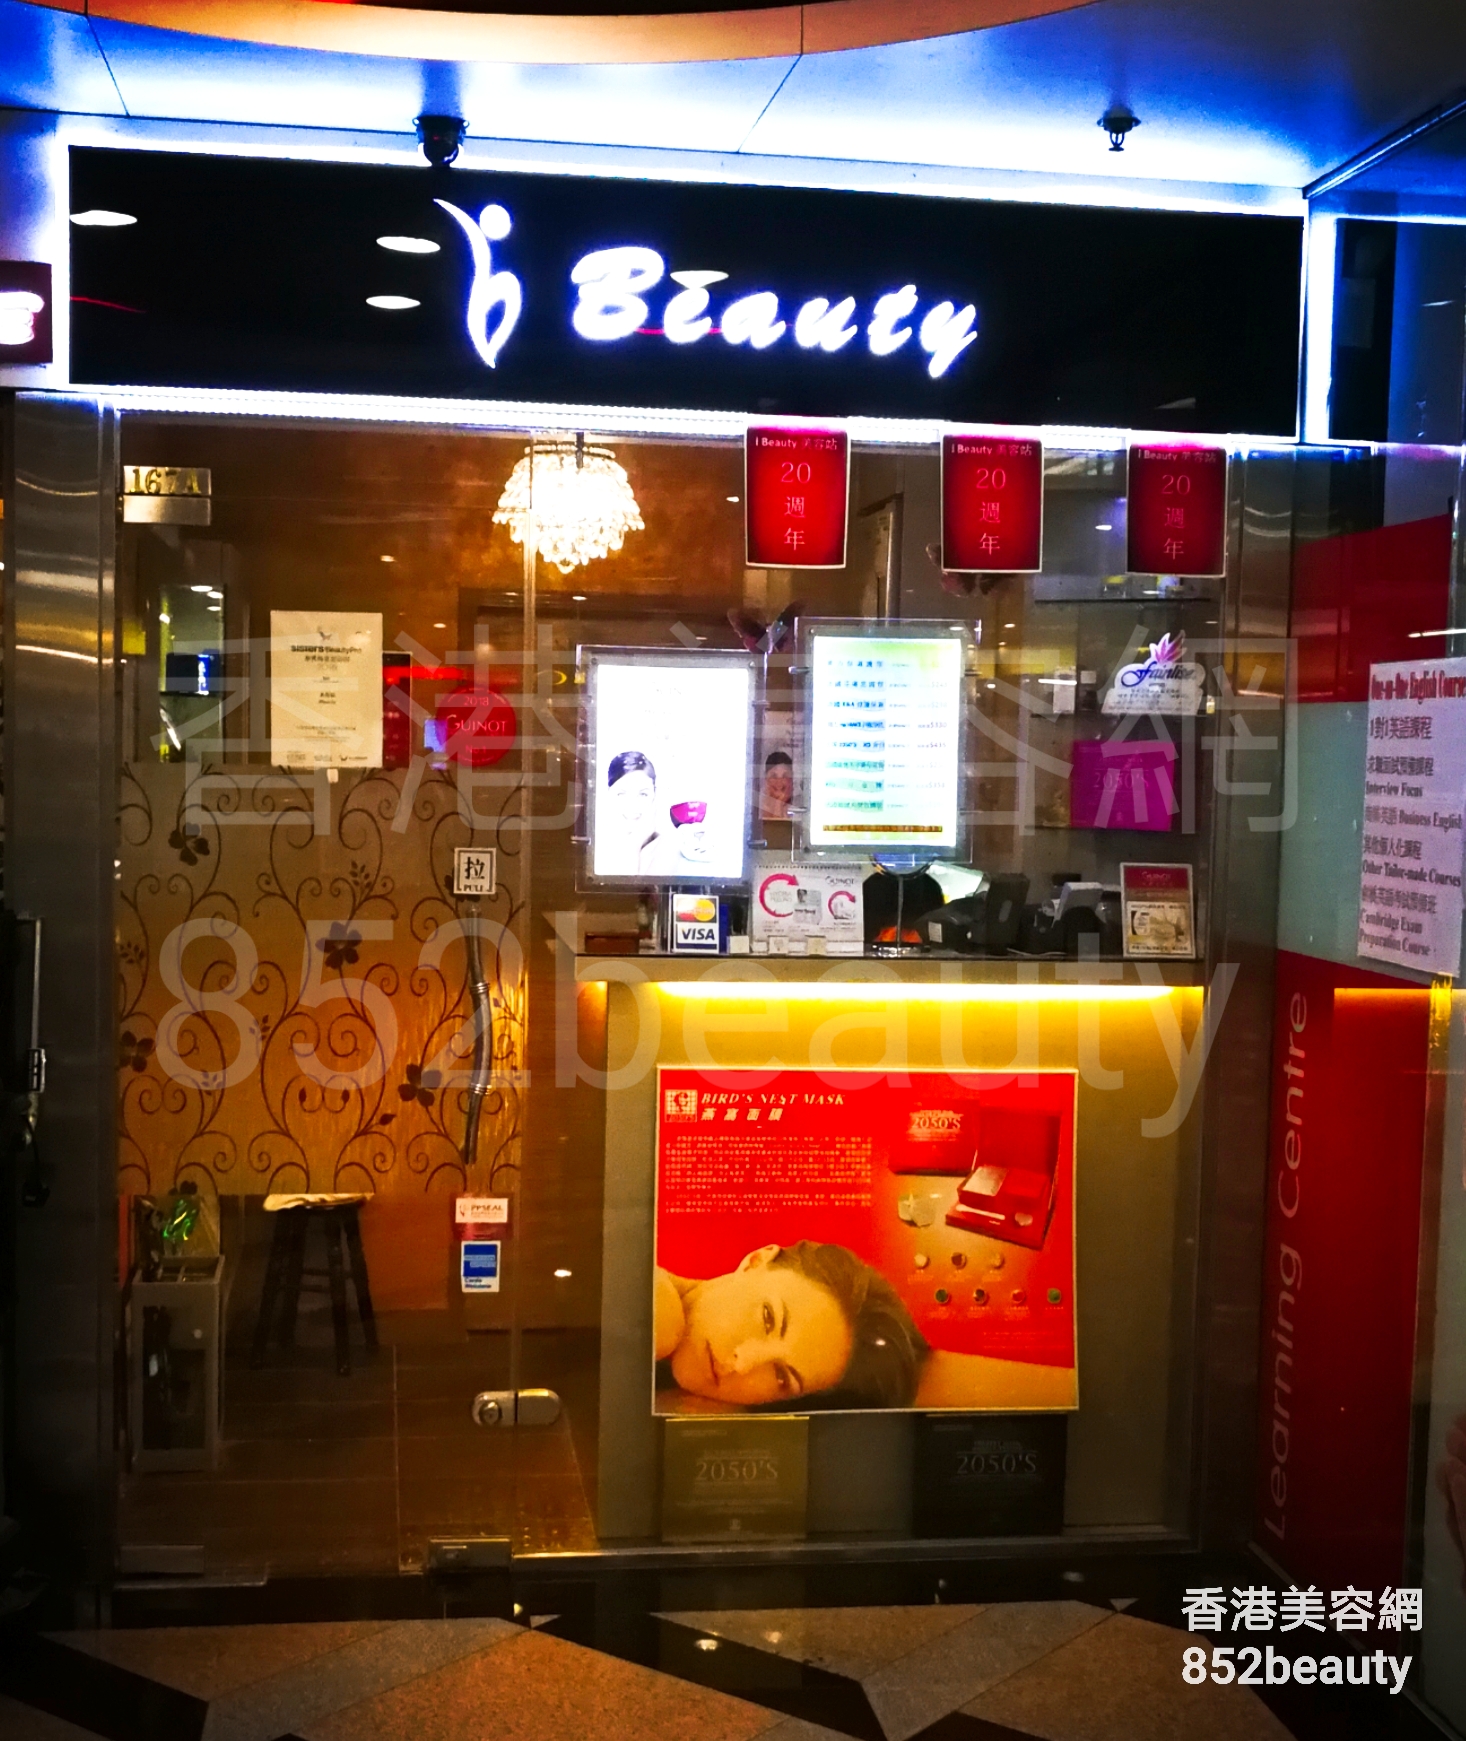 香港美容網 Hong Kong Beauty Salon 美容院 / 美容師: iBeauty